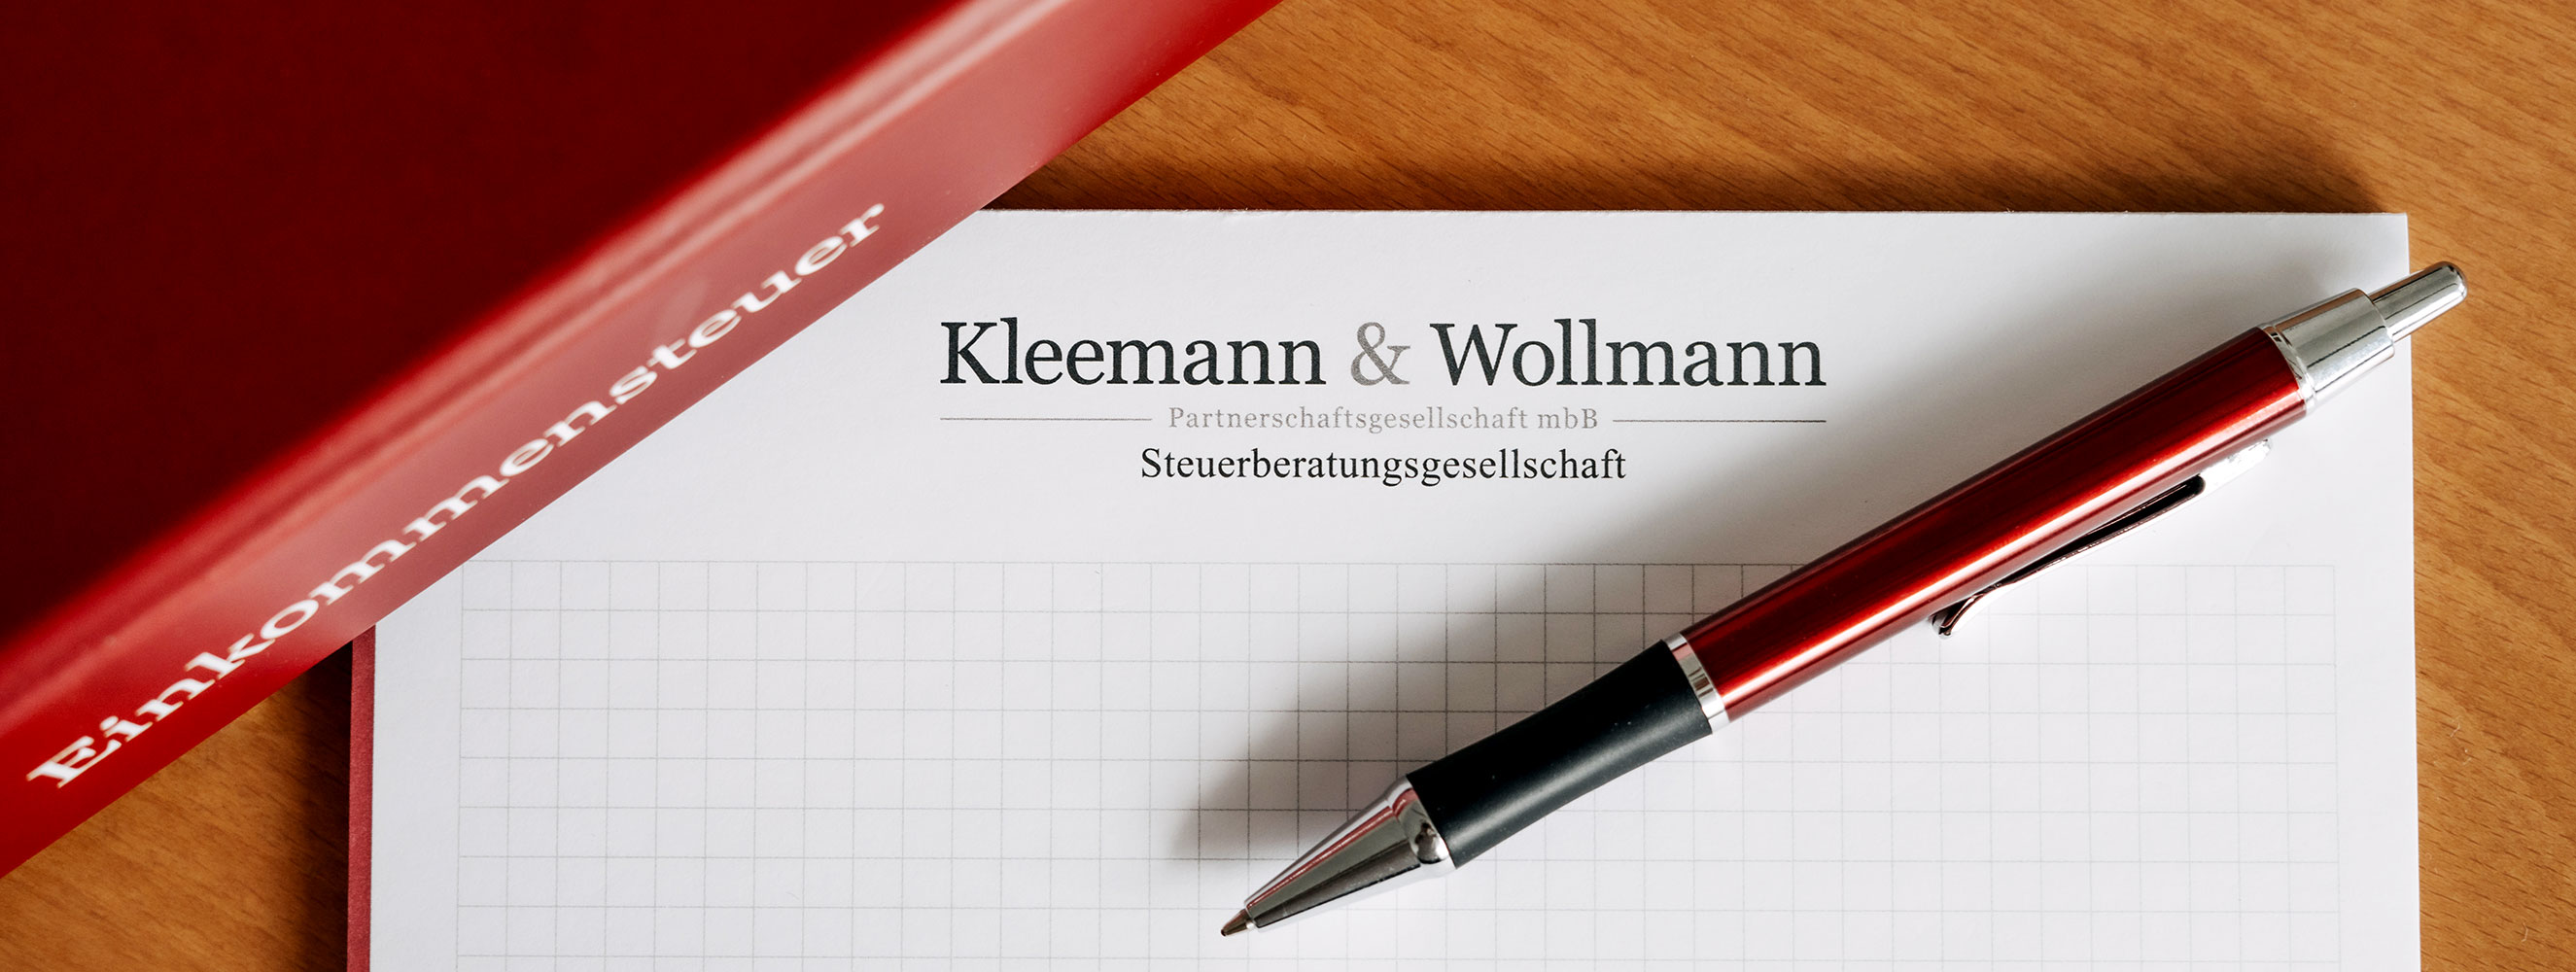 Kleemann & Wollmann Partnerschaftsgesellschaft mbB Berlin | Steuerberater, Wirtschaftsprüfer, Rechtsanwalt